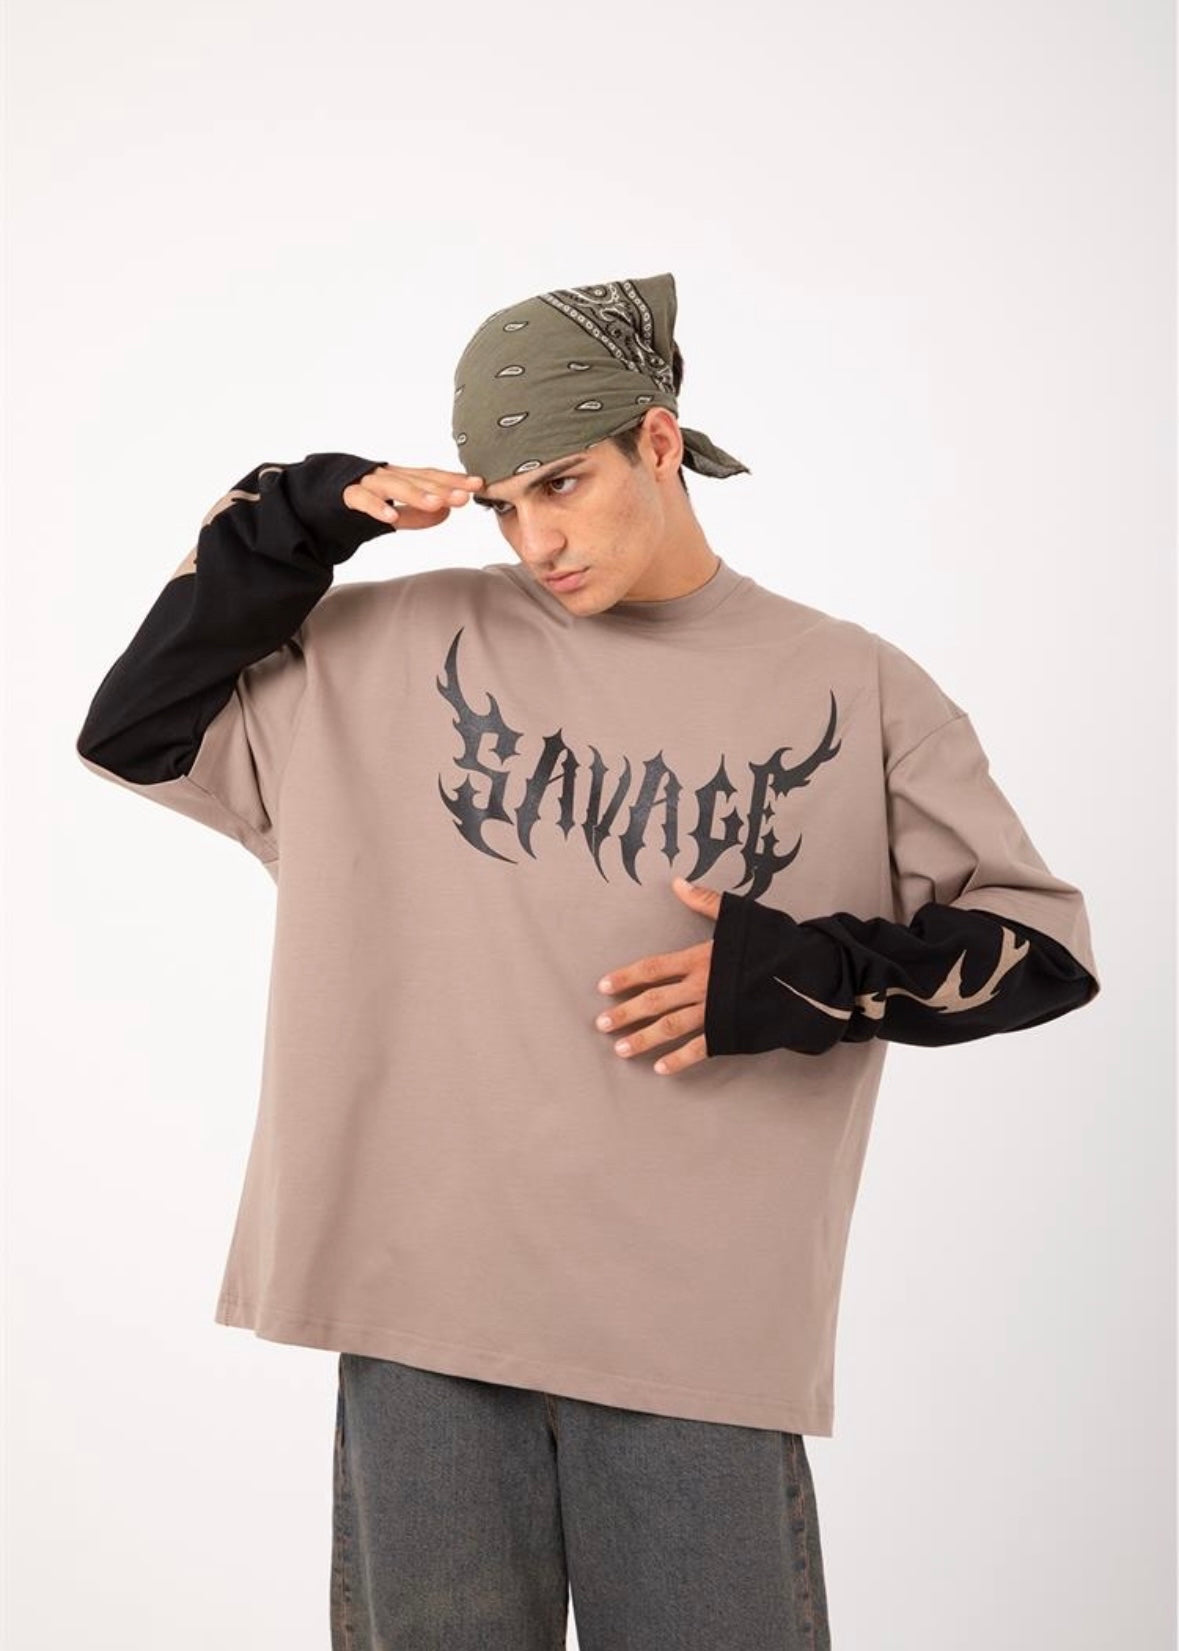 Savage Long Sleeve Tshirt - Clothing Lab